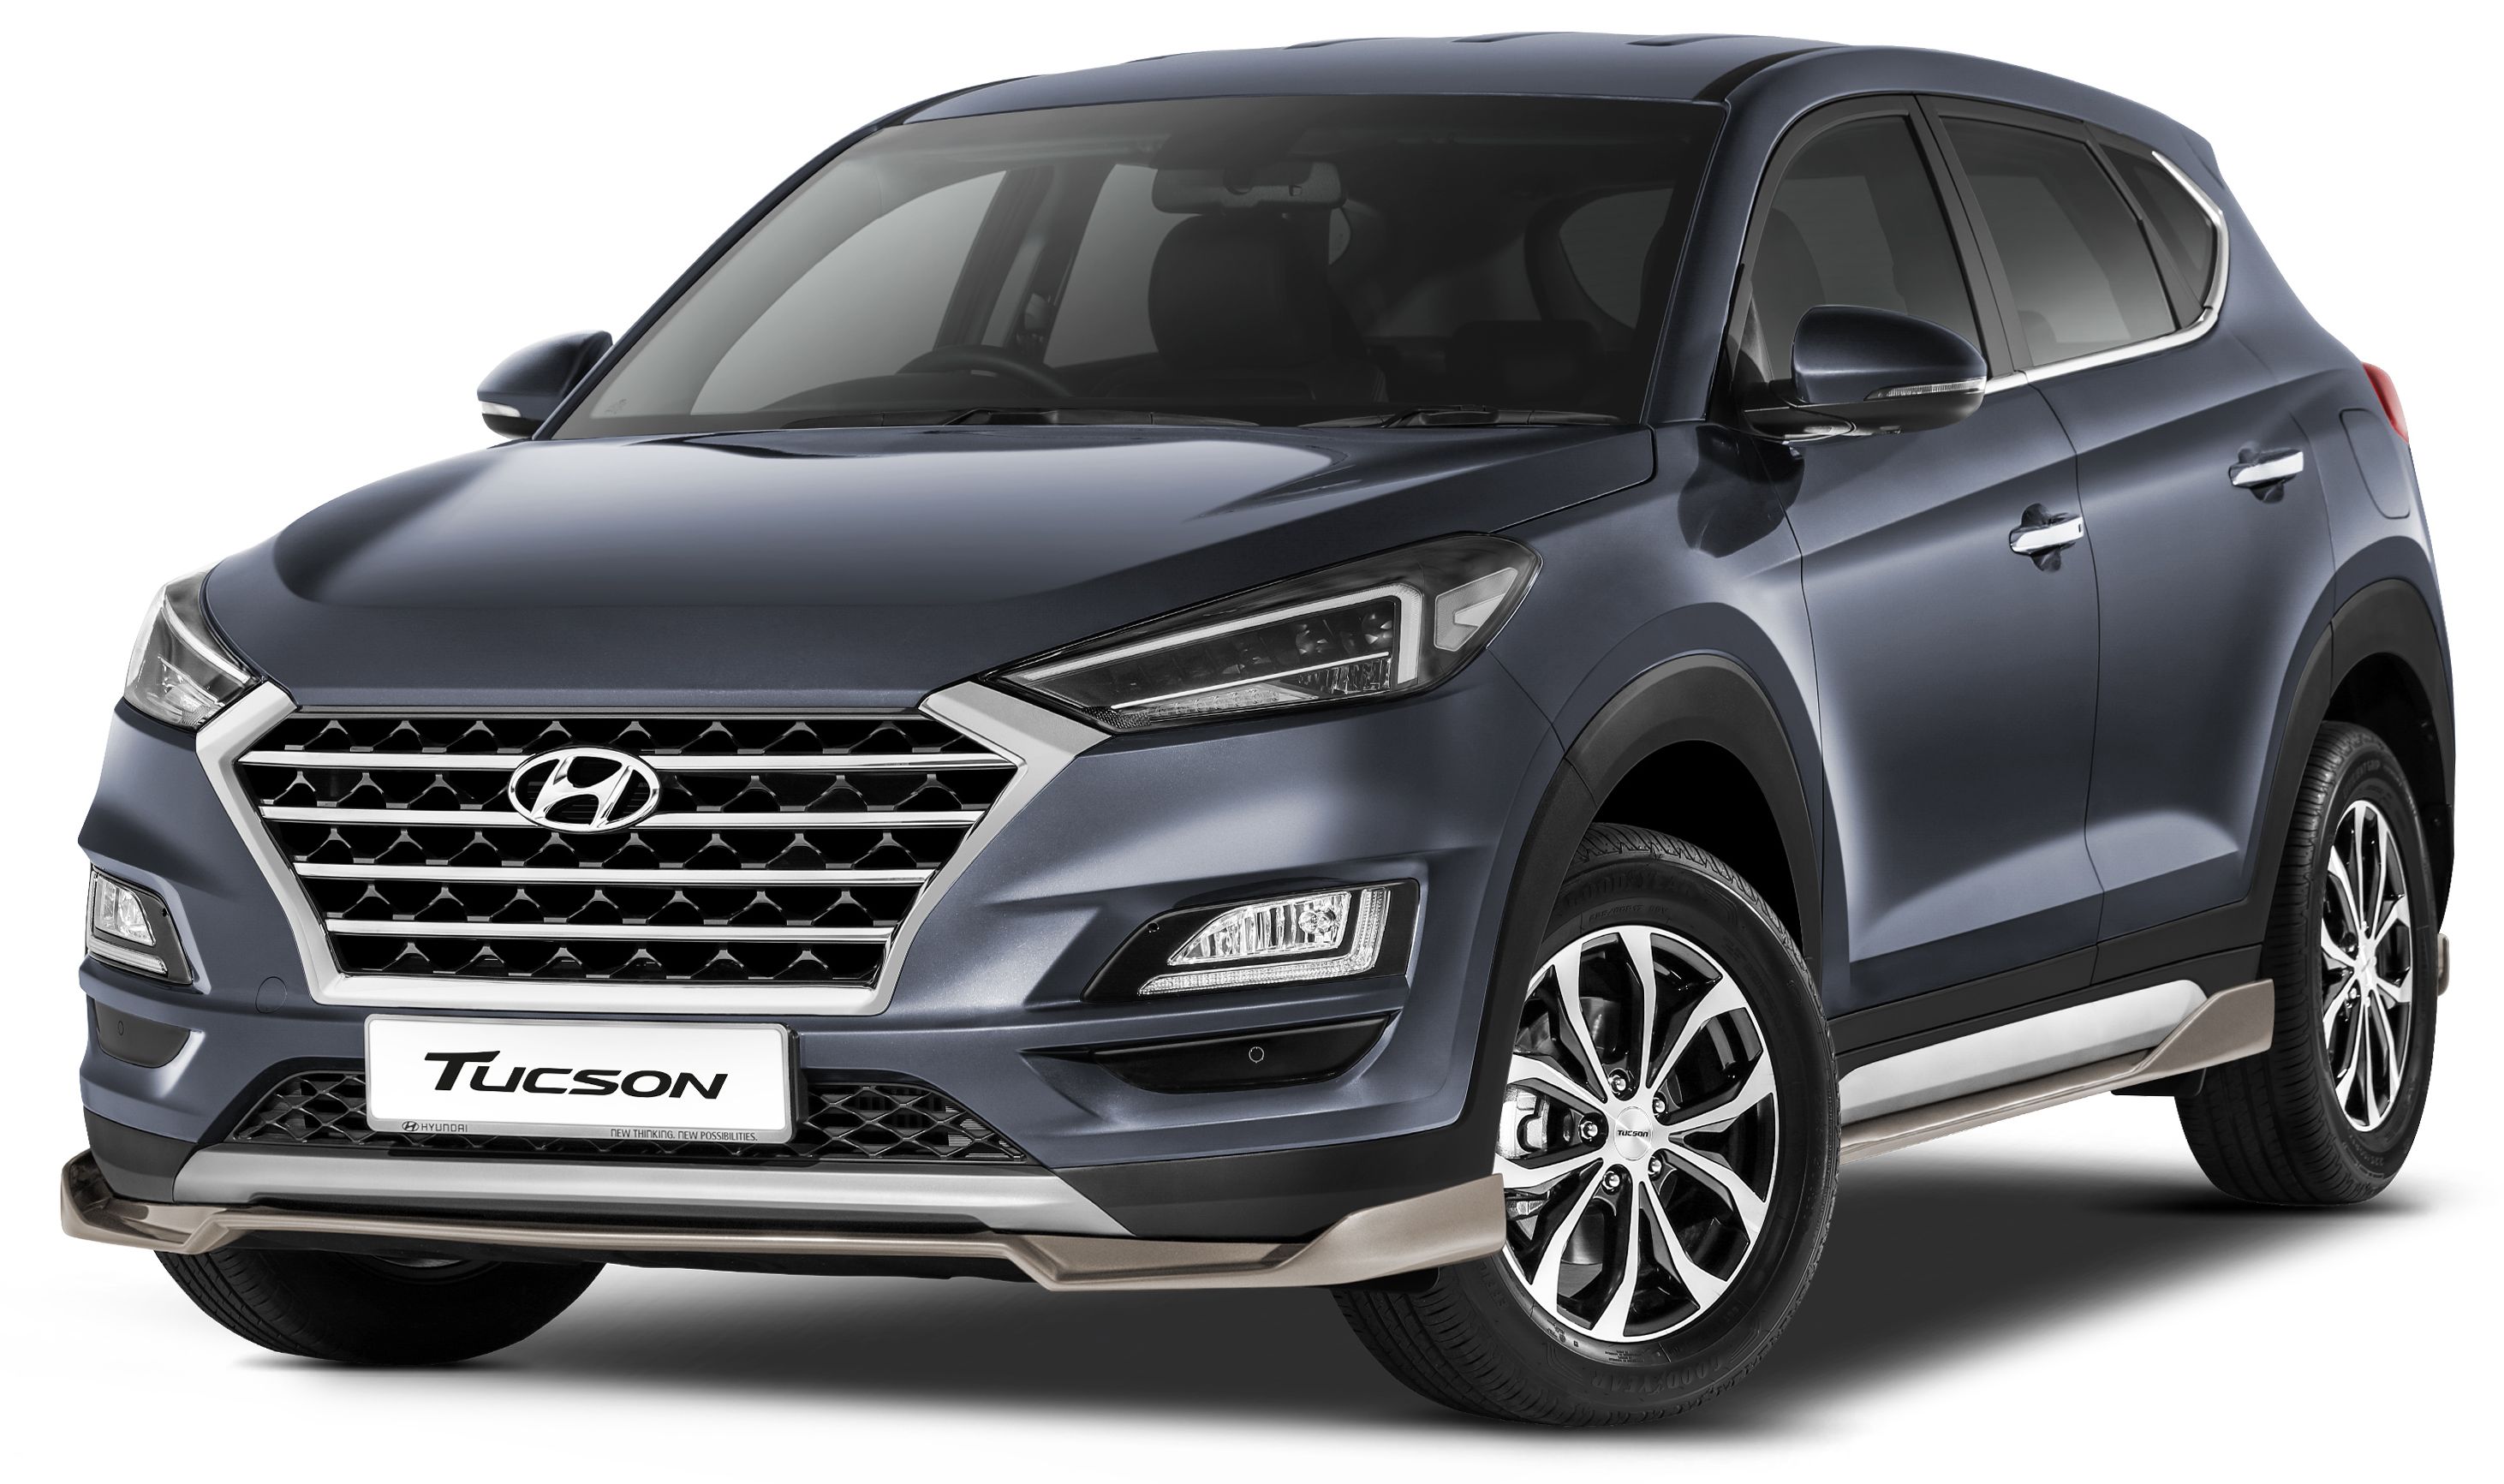 ad-hyundai-year-end-bonanza-is-back-buy-new-car-enjoy-cash-rebates